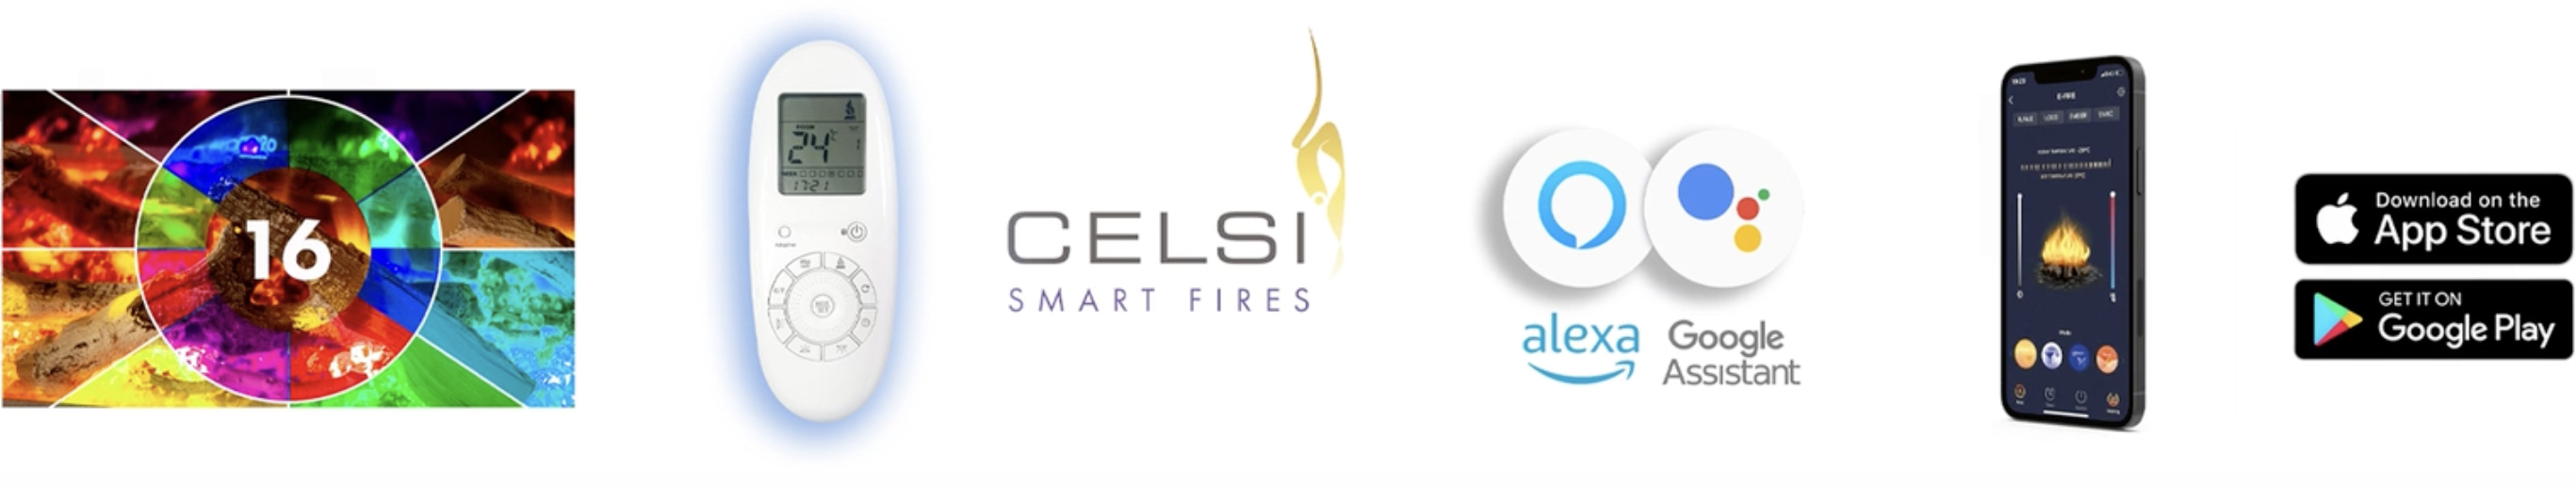 Celsi Firebeam Smart Features